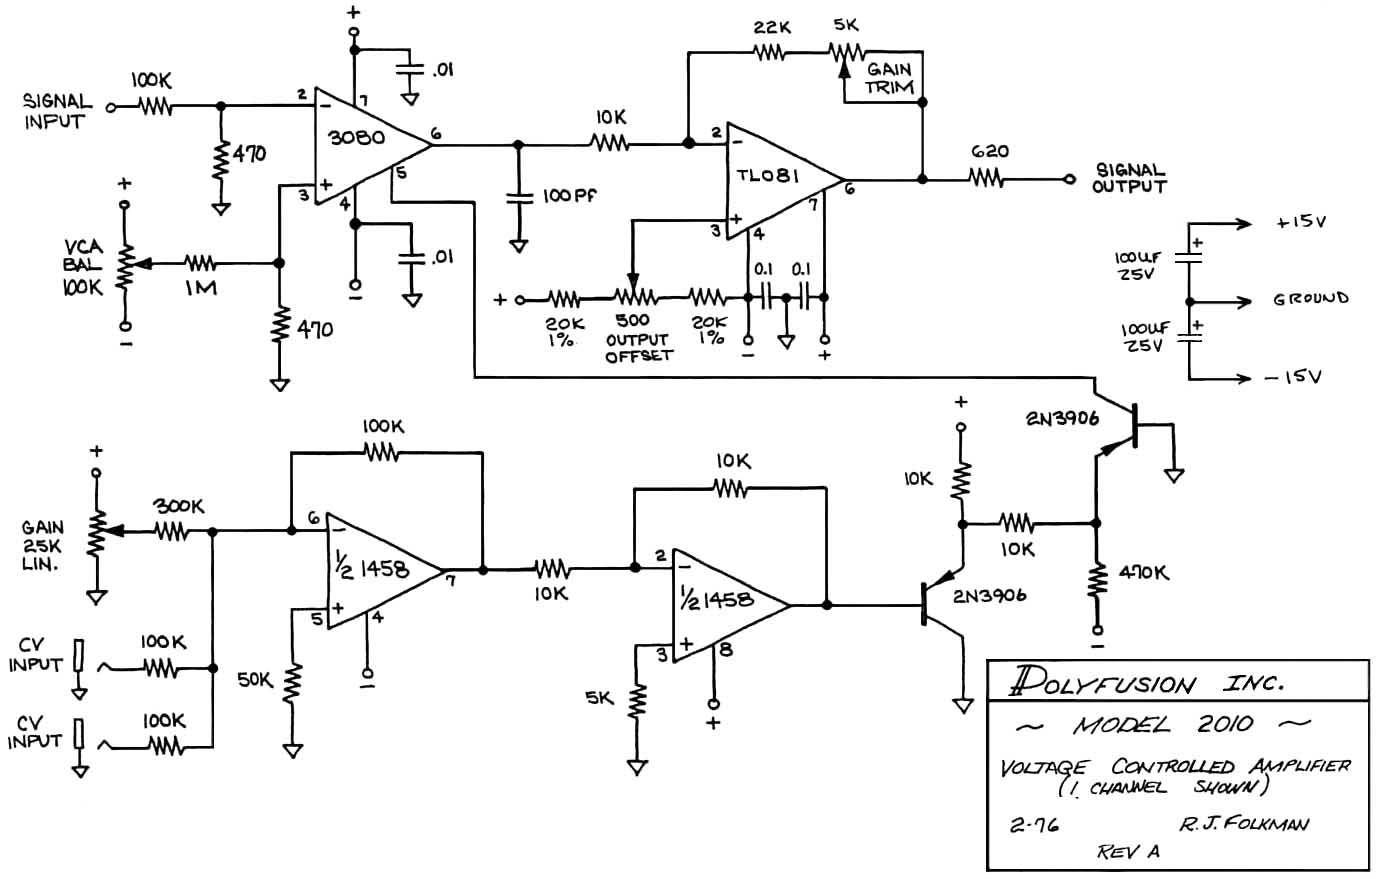 Схема Polyfusion - 2010 Voltage control amplifier